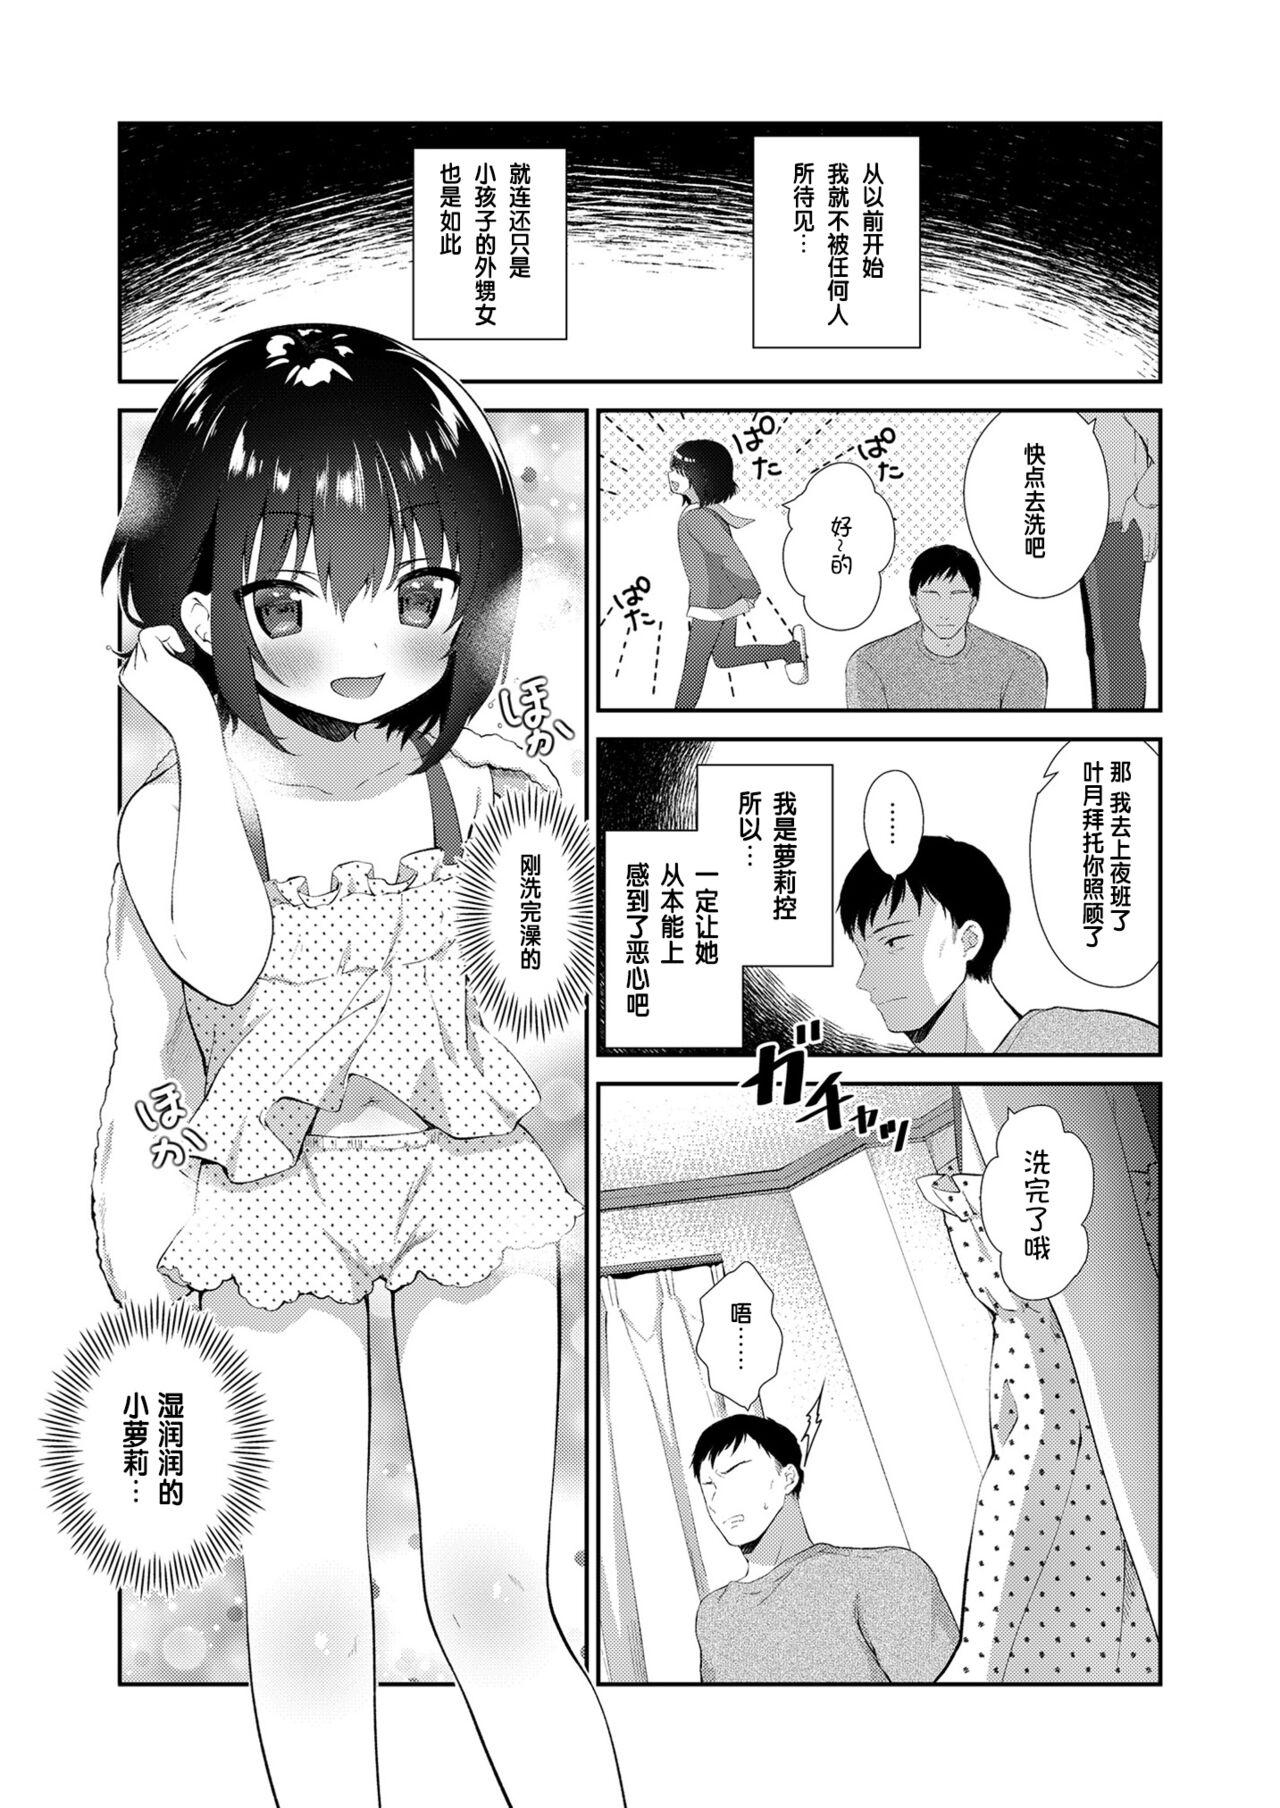 Stepbro Mei ga Warui kara Shikatanai. - Original Hymen - Page 2